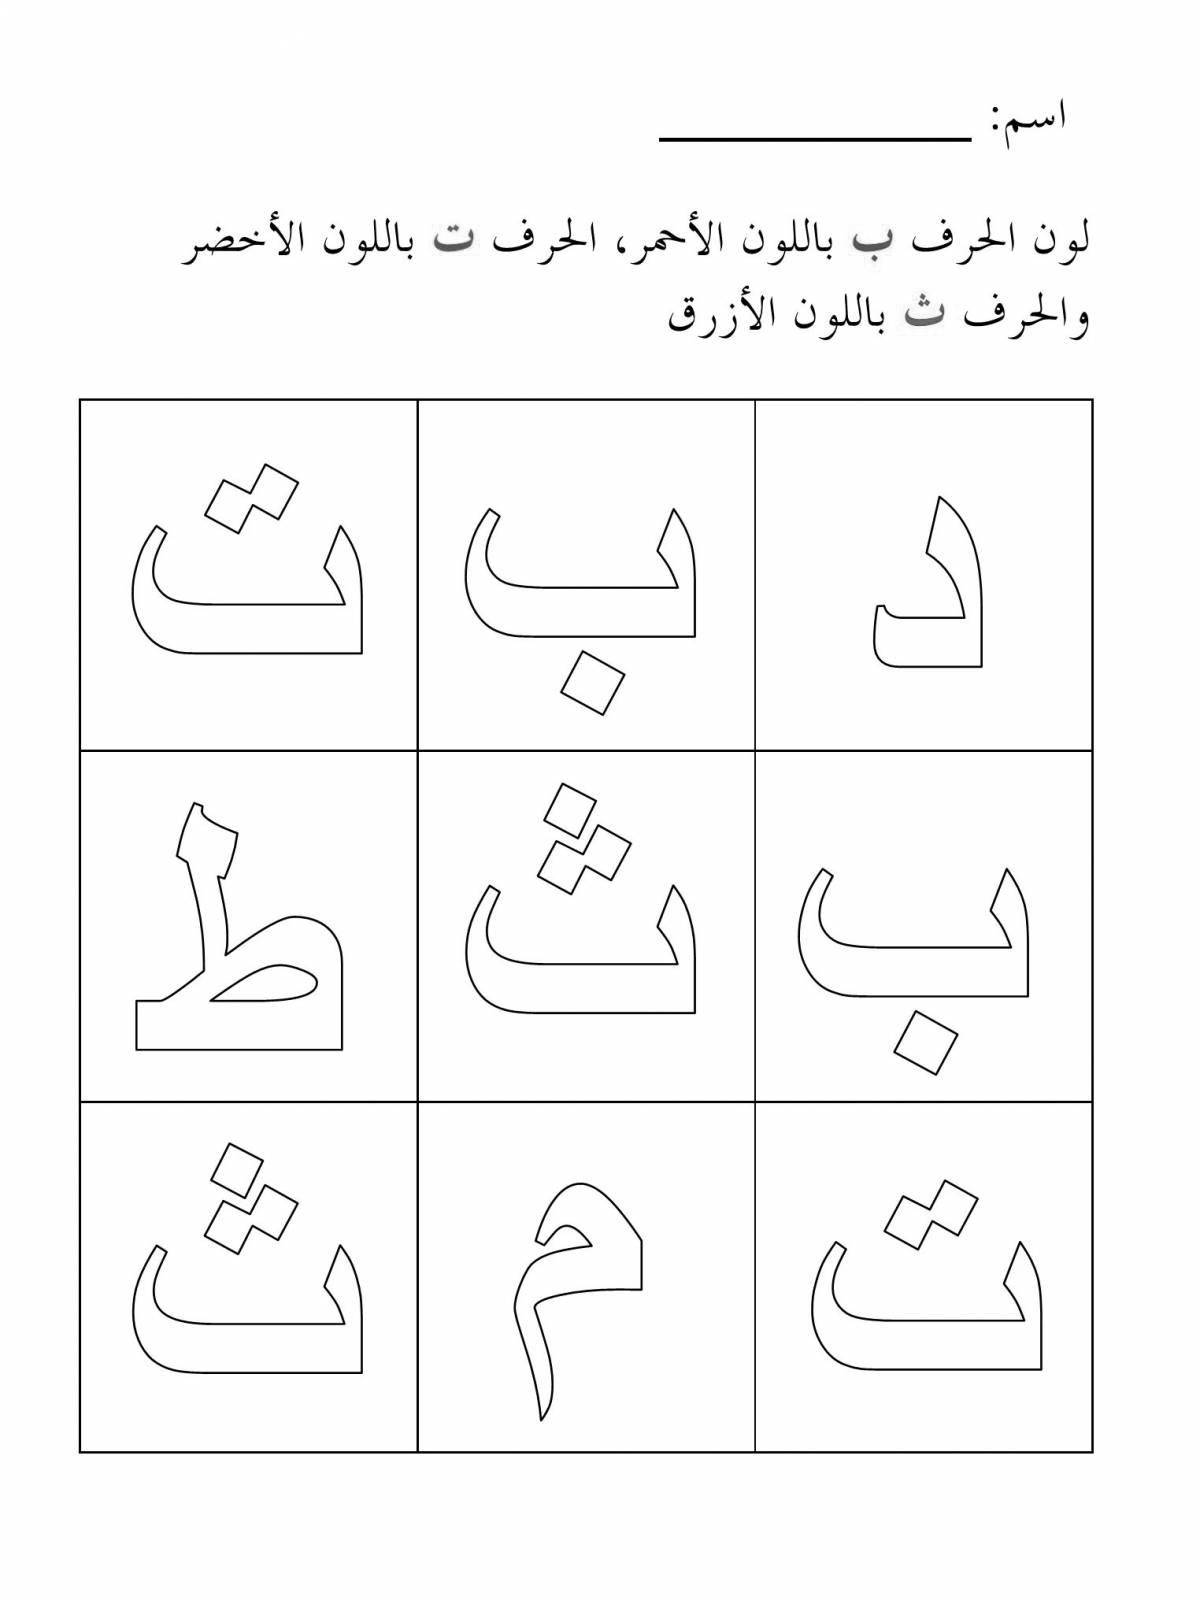 Красочная страница-раскраска арабского алфавита для юниоров